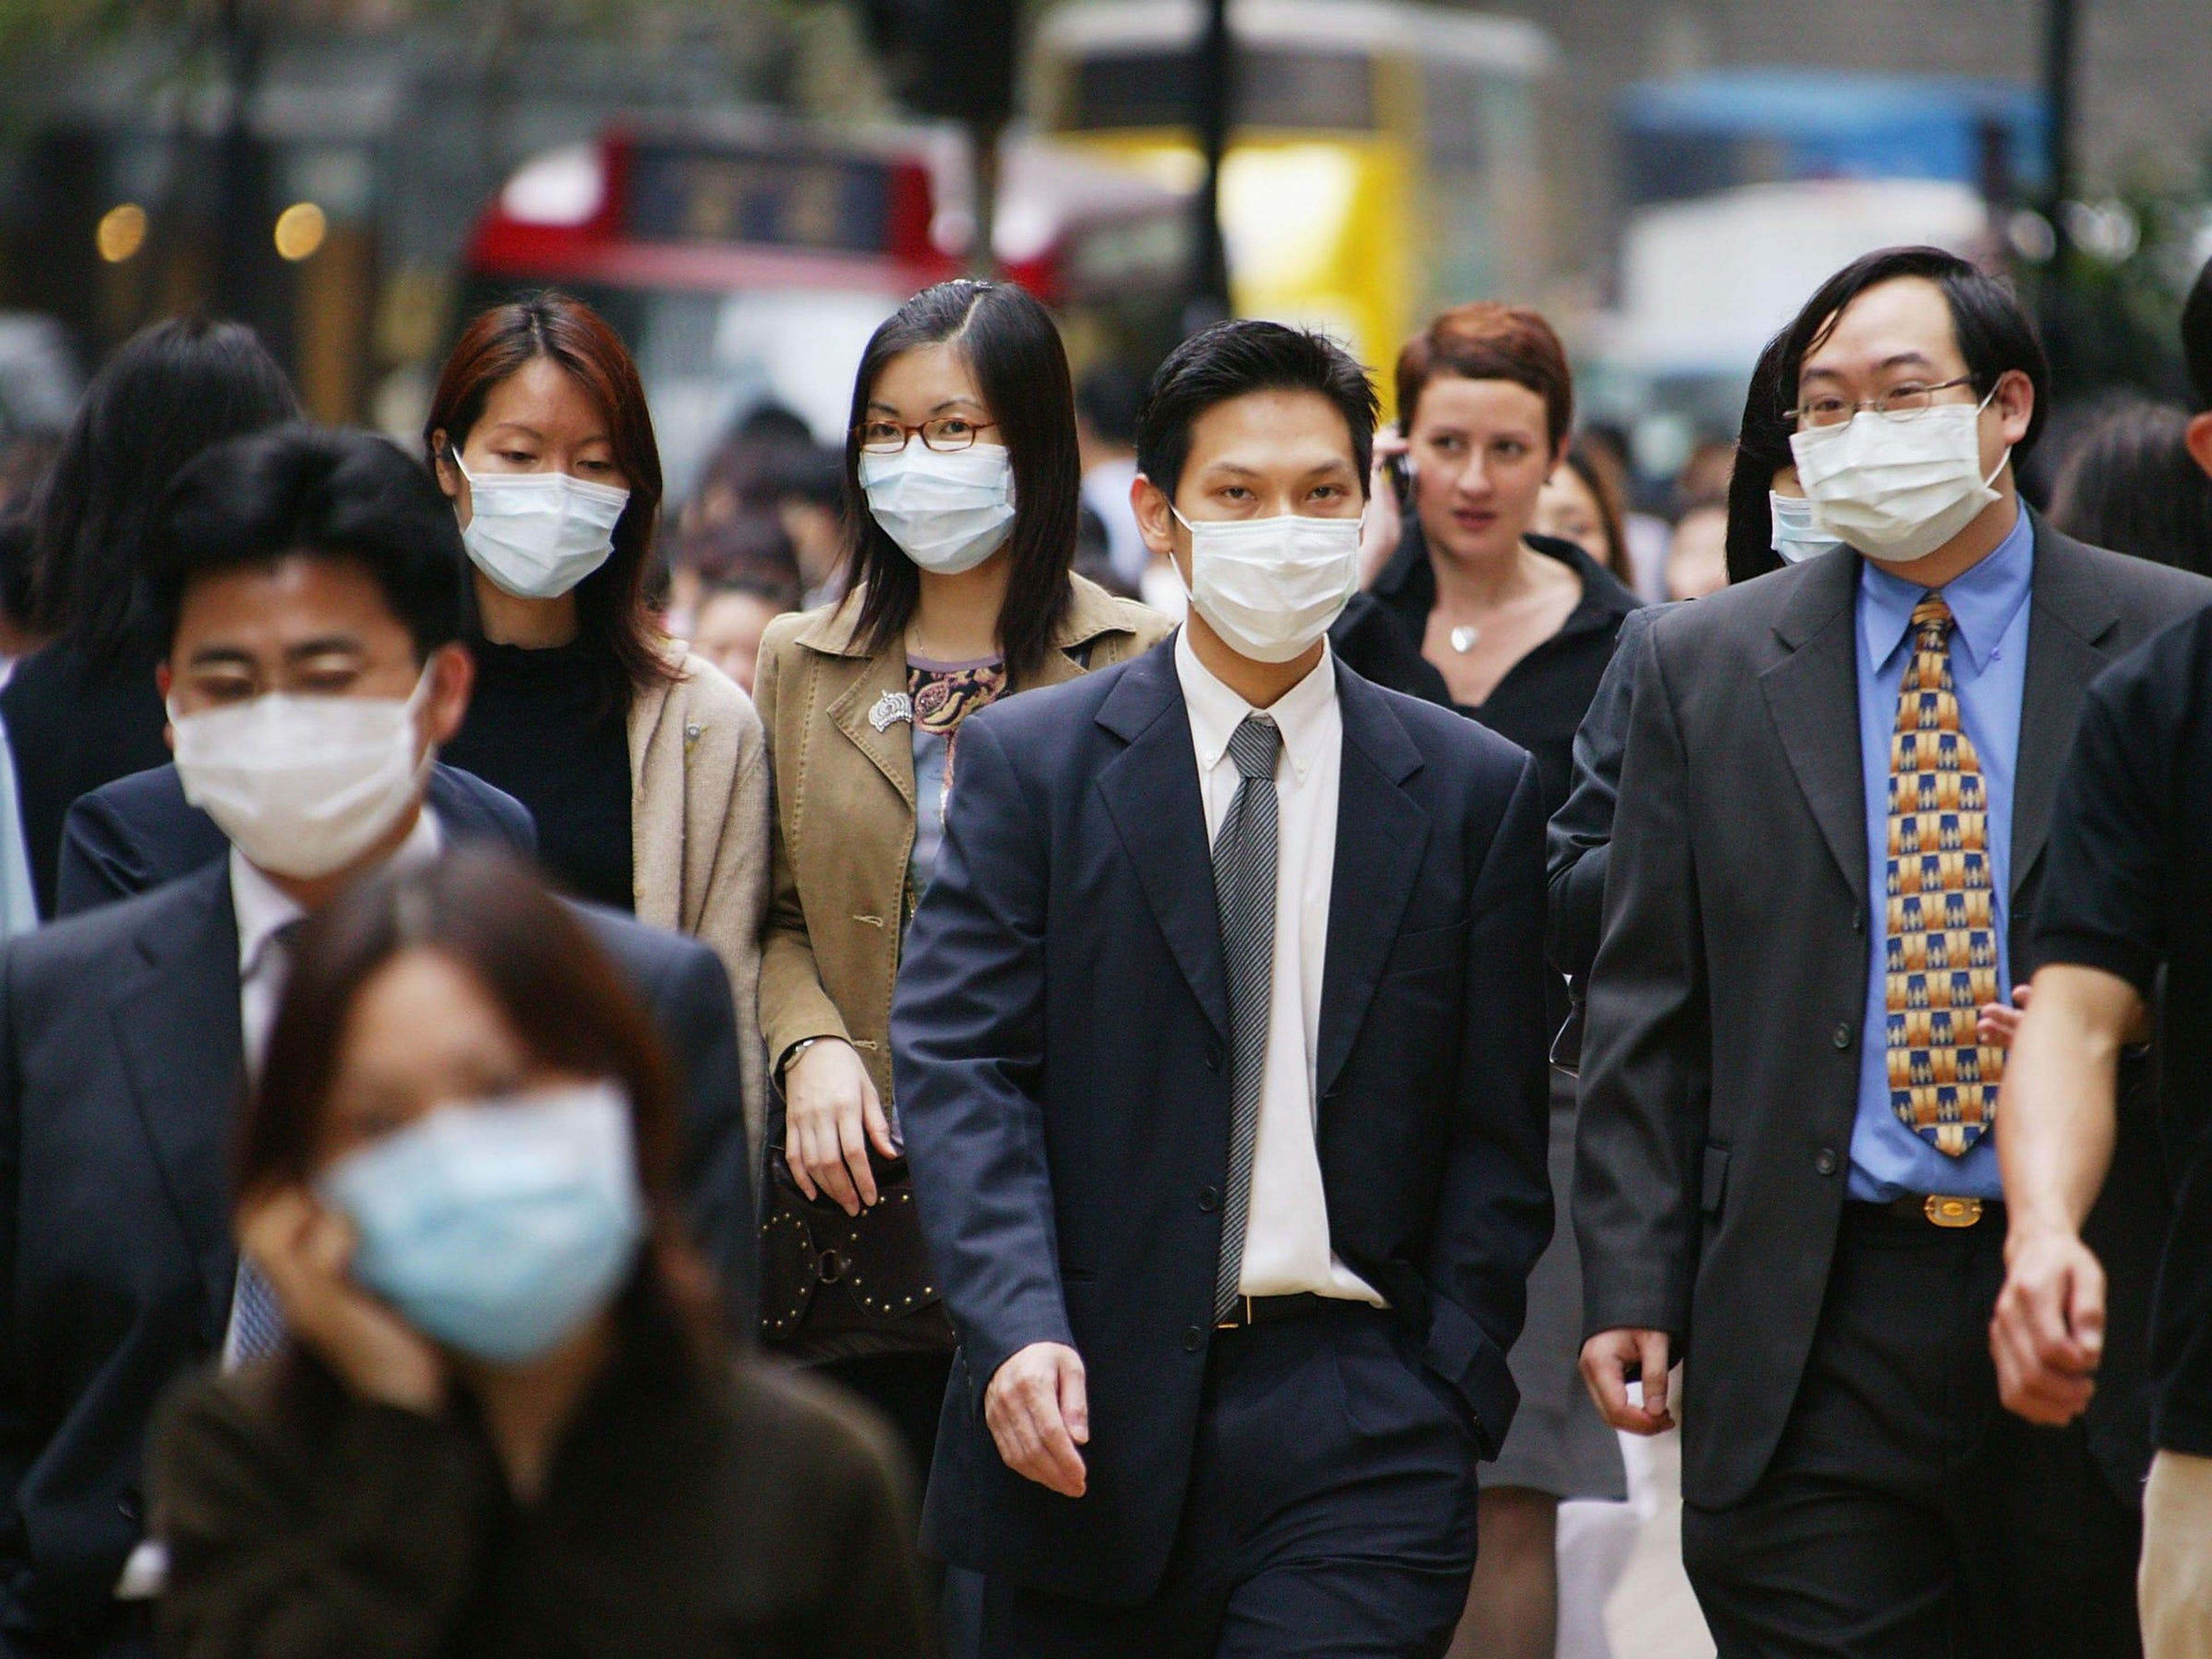 Самое массовое заболевание. Массовые заболевания людей. Китайцы в масках. Человек в маске.